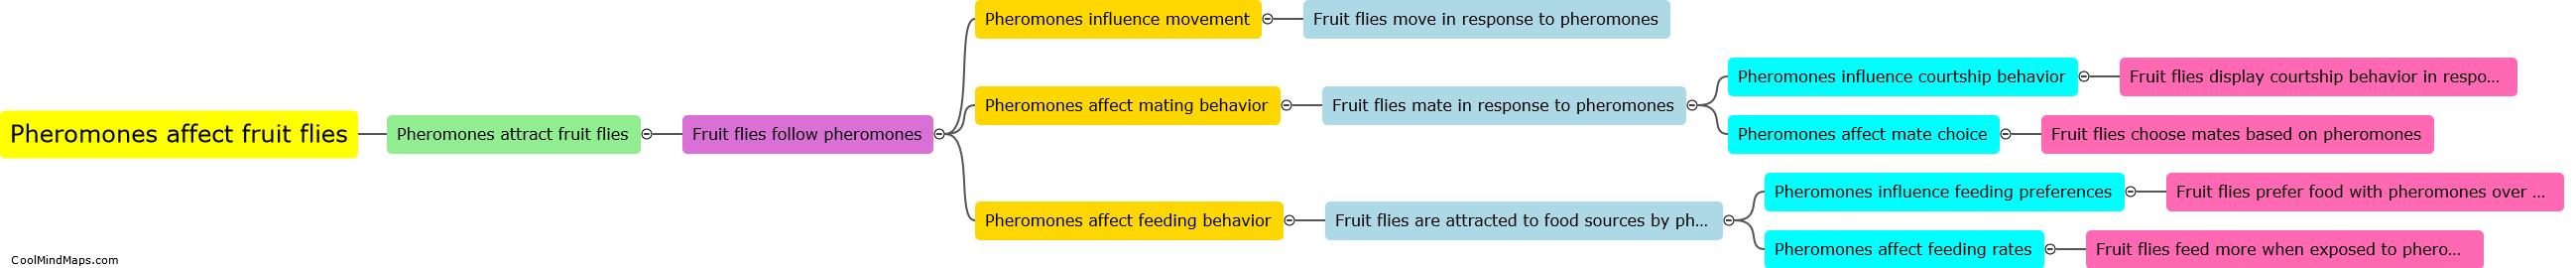 How do pheromones affect the behavior of fruit flies?